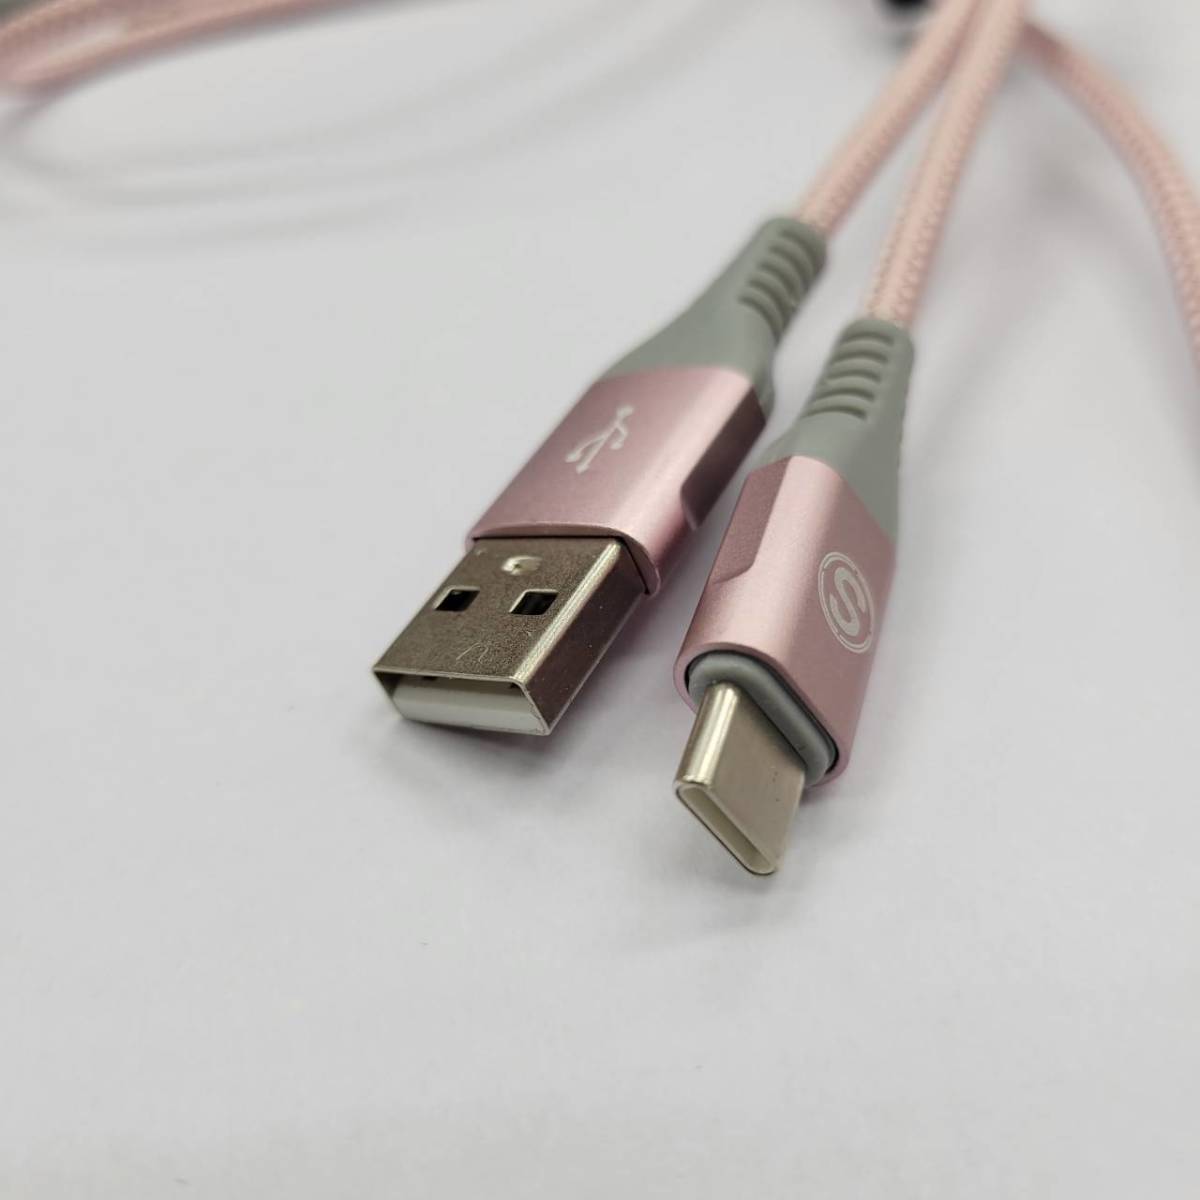 ★【在庫処分価格】USB Type C ケーブル 2本セット1m+1m タイプ C 充電ケーブル AC-01 ピンク 充電器ナイロン編組コード☆C12-135aの画像3